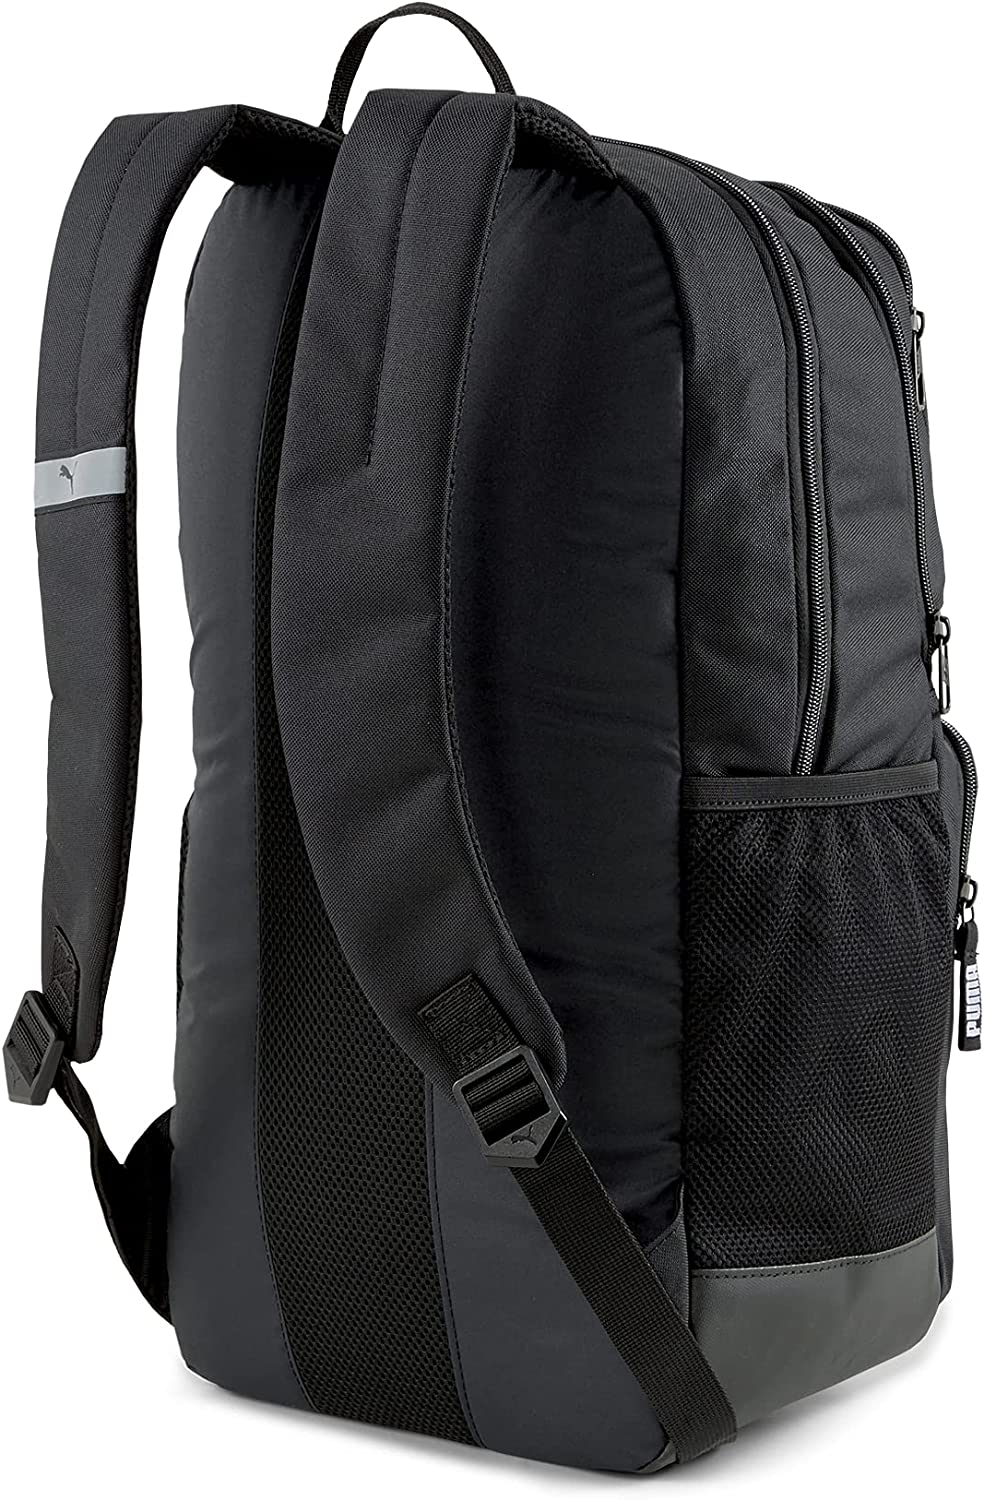 Puma Deck Backpack II Black, OSFA